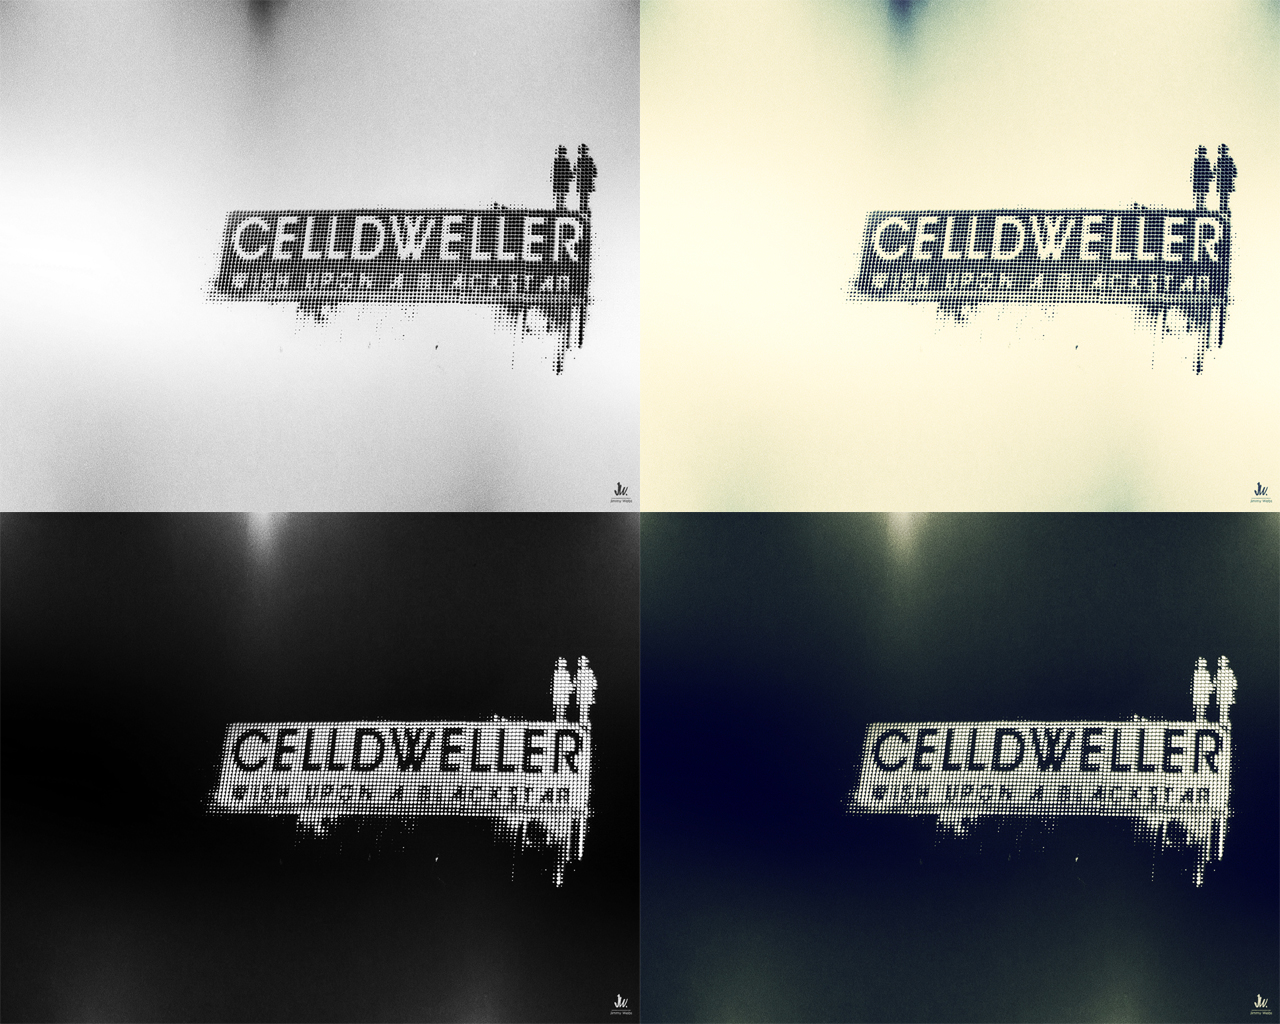 Celldweller wallpaper pack